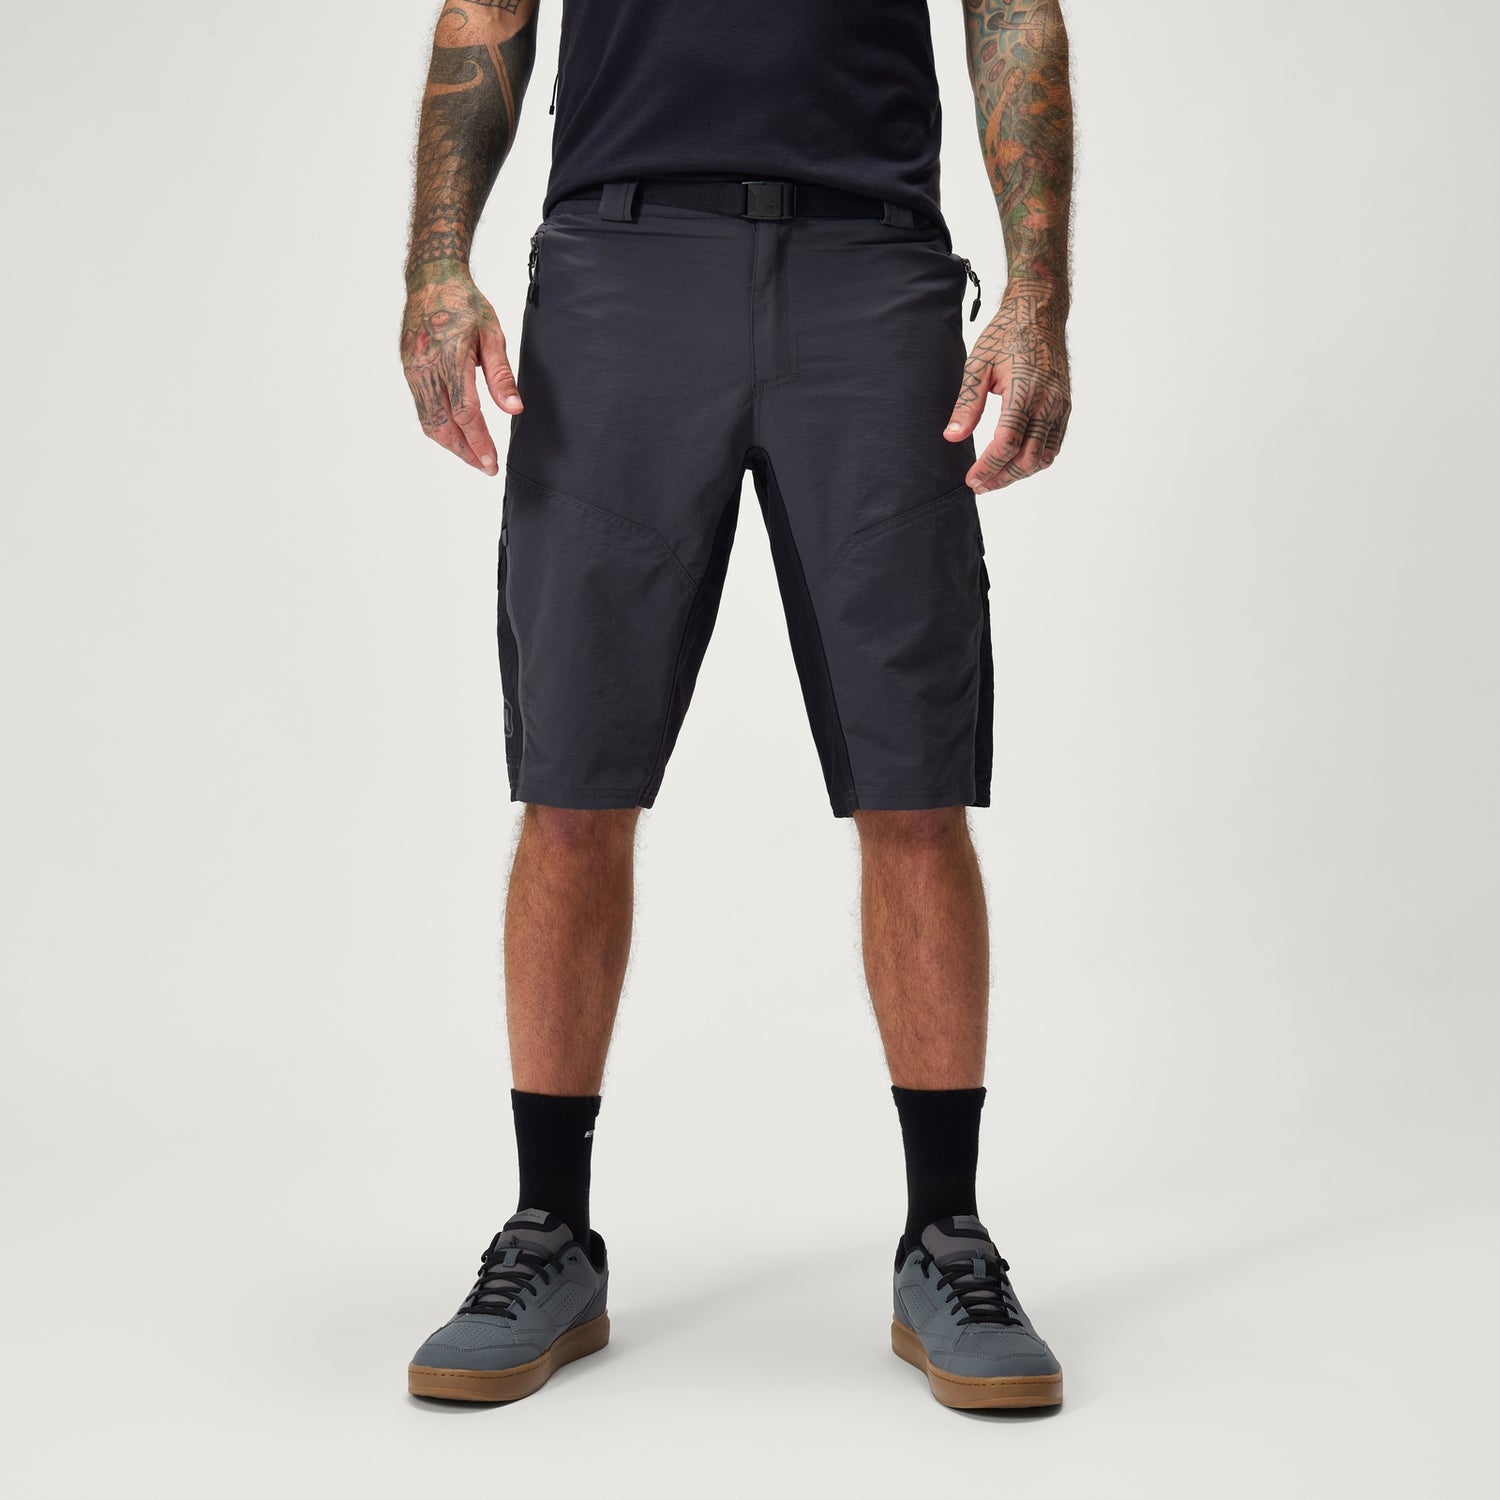 Men's Hummvee Short with Liner - Grey - XXXL